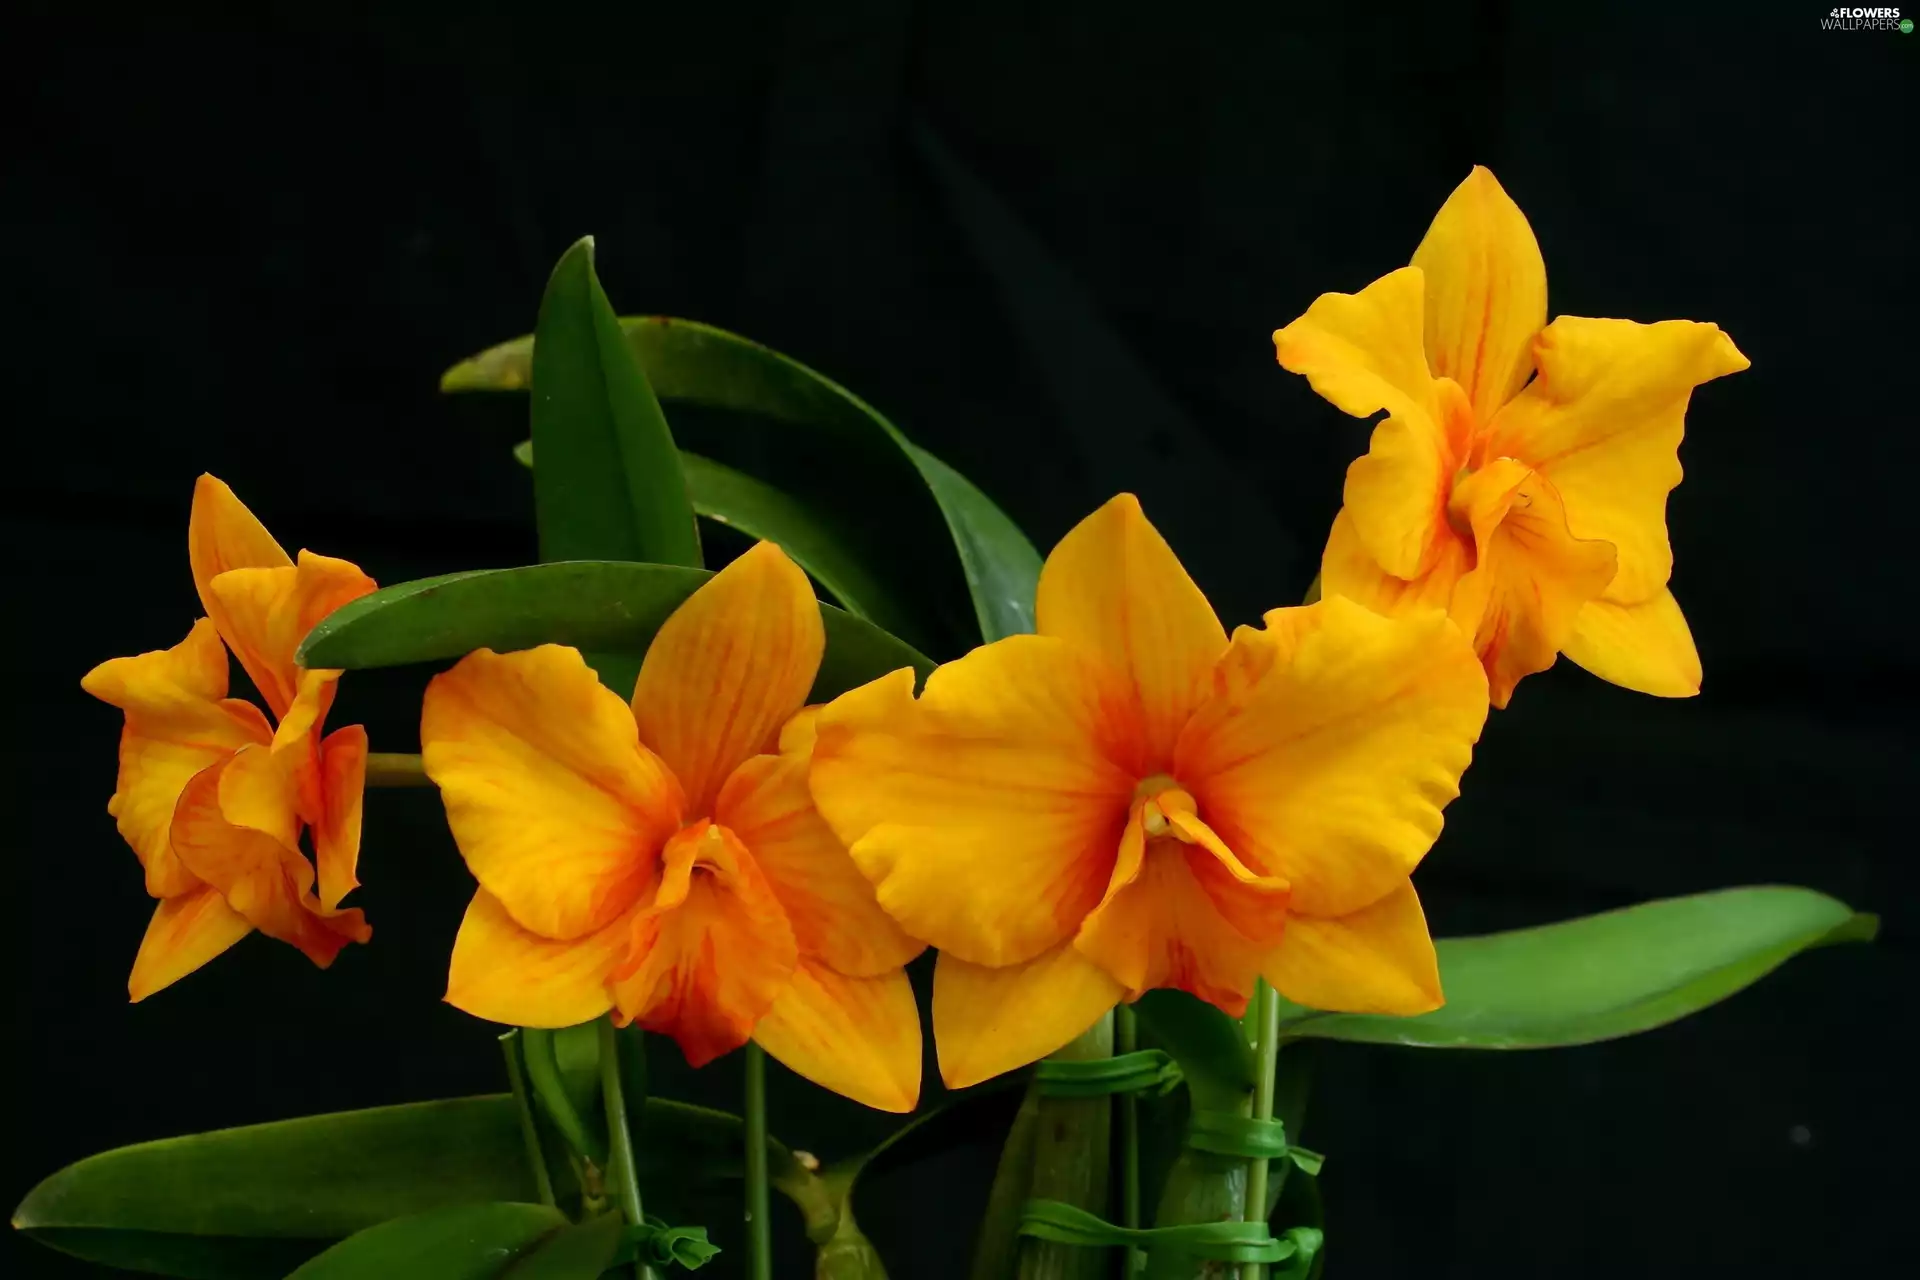 Orange, orchids